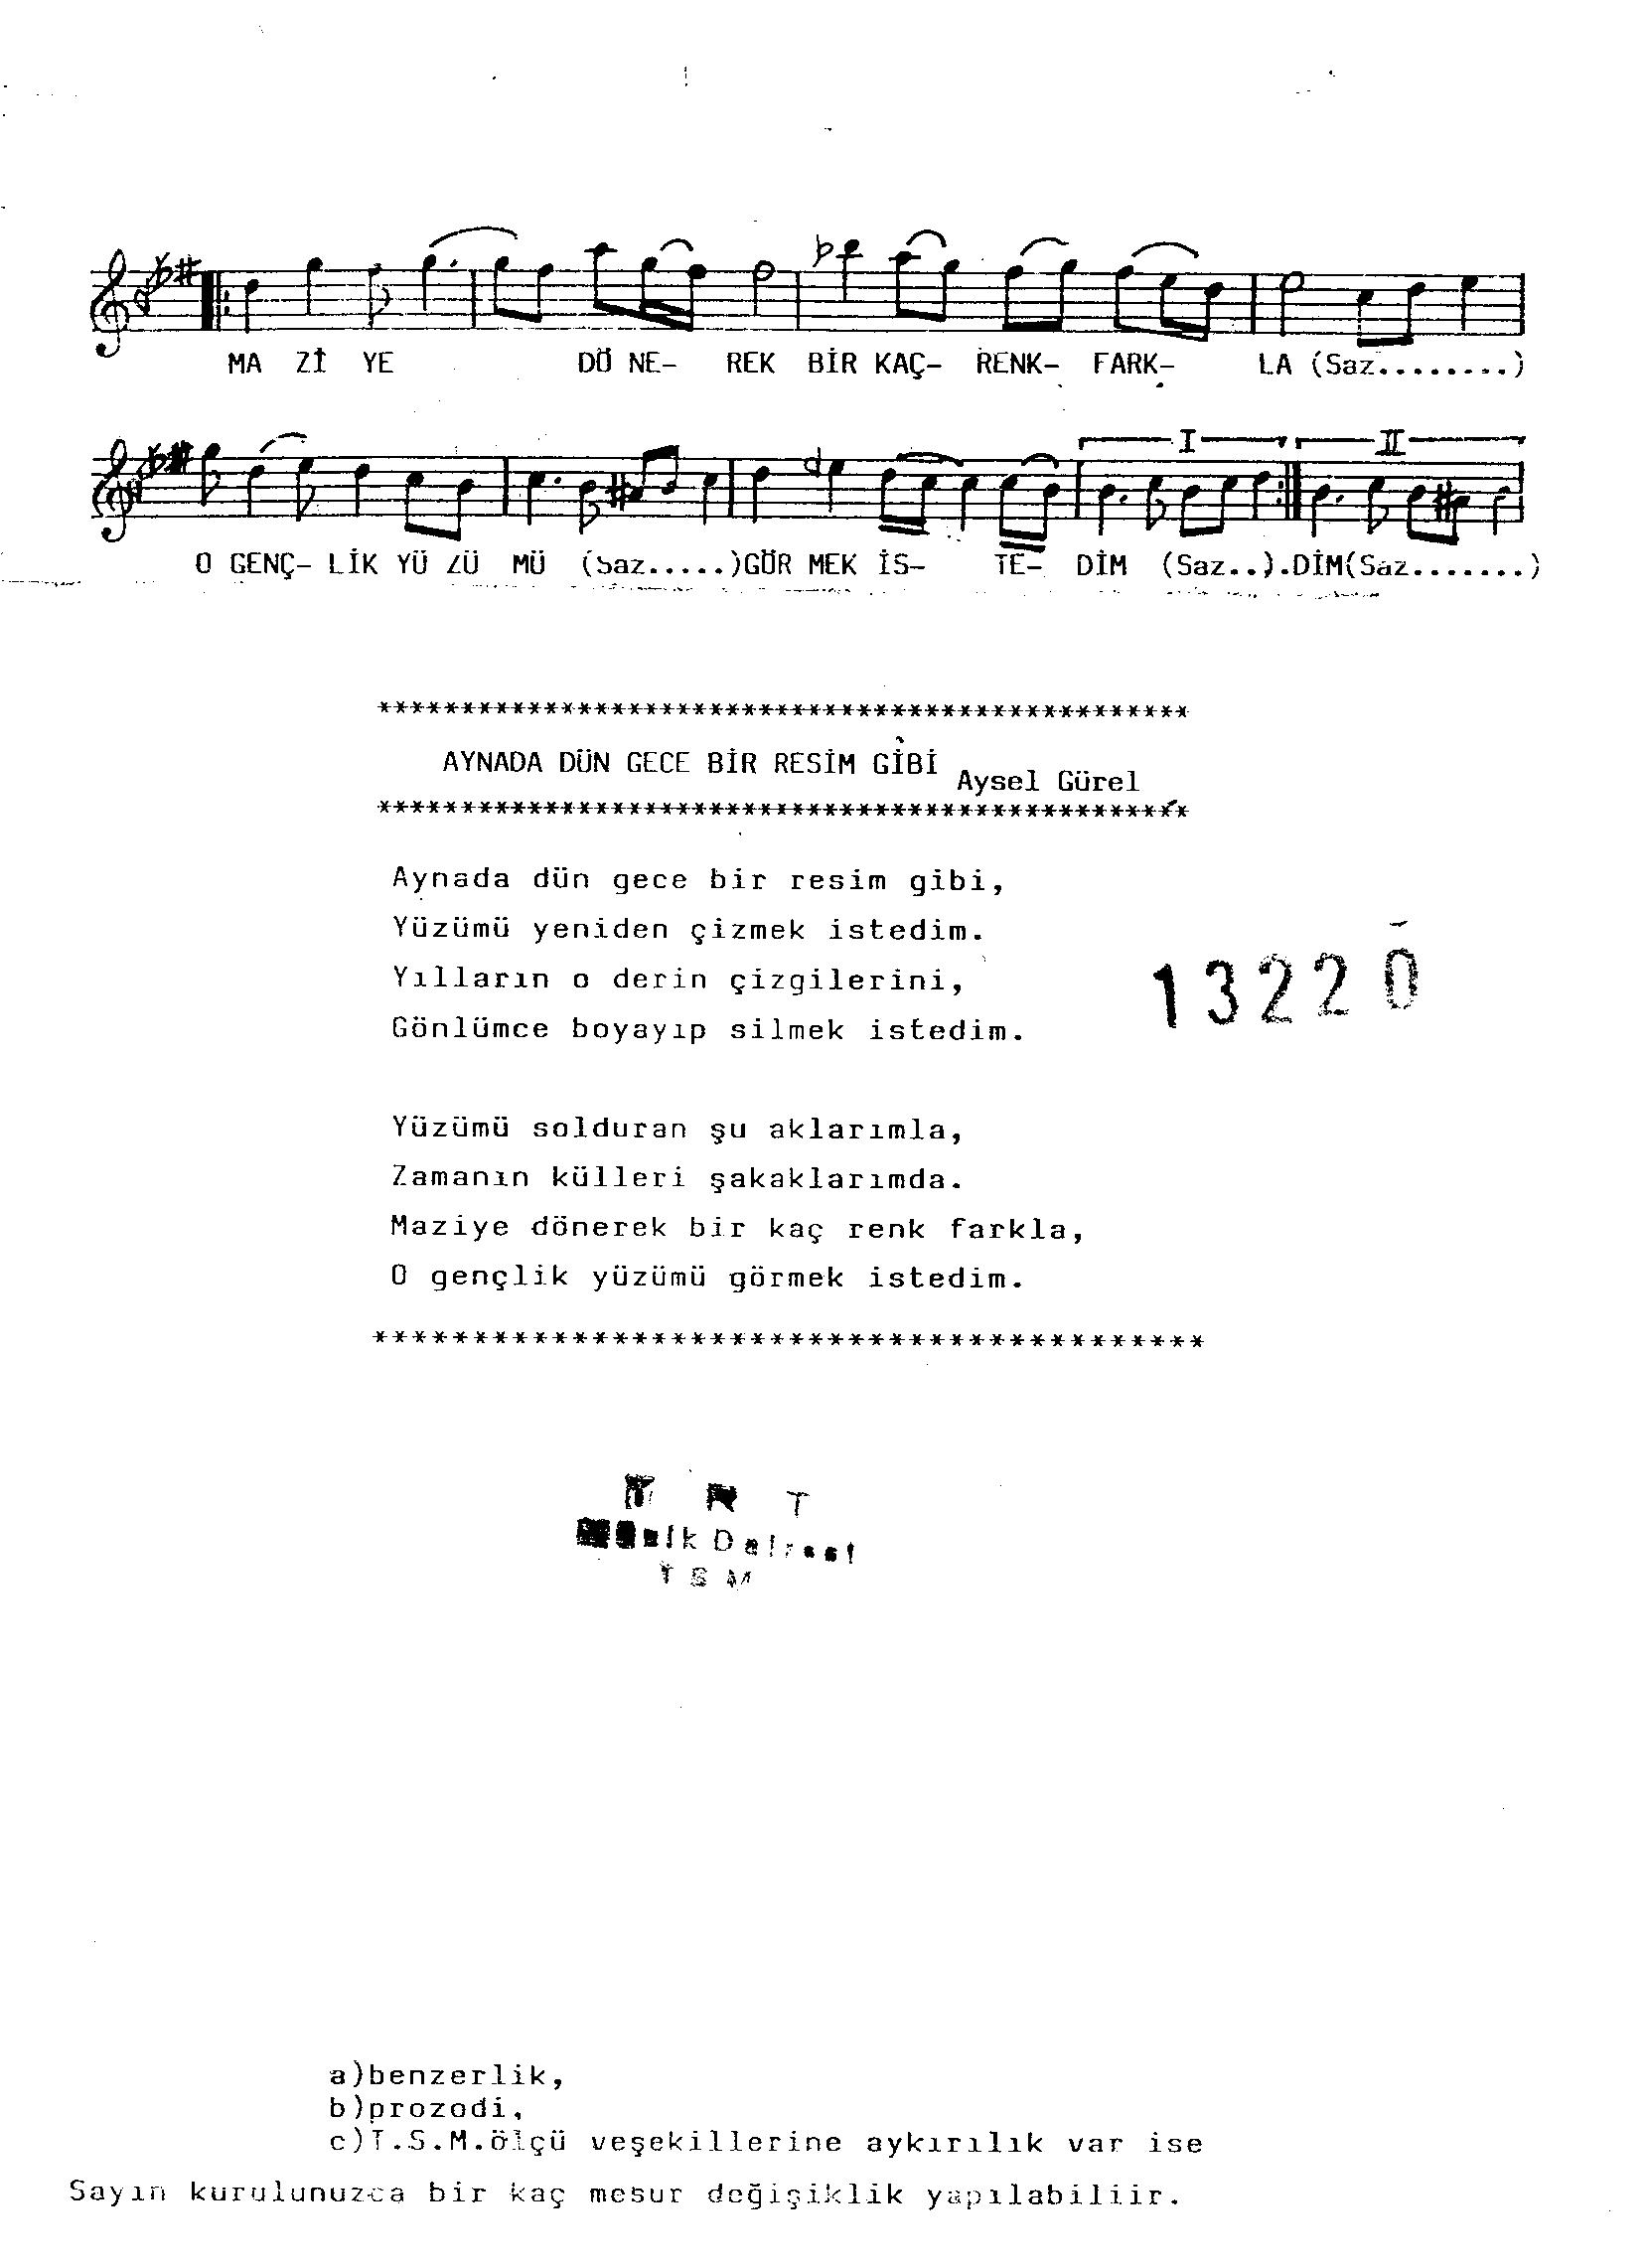 Hüzzâm - Şarkı - Cemil Derelioğlu - Sayfa 2